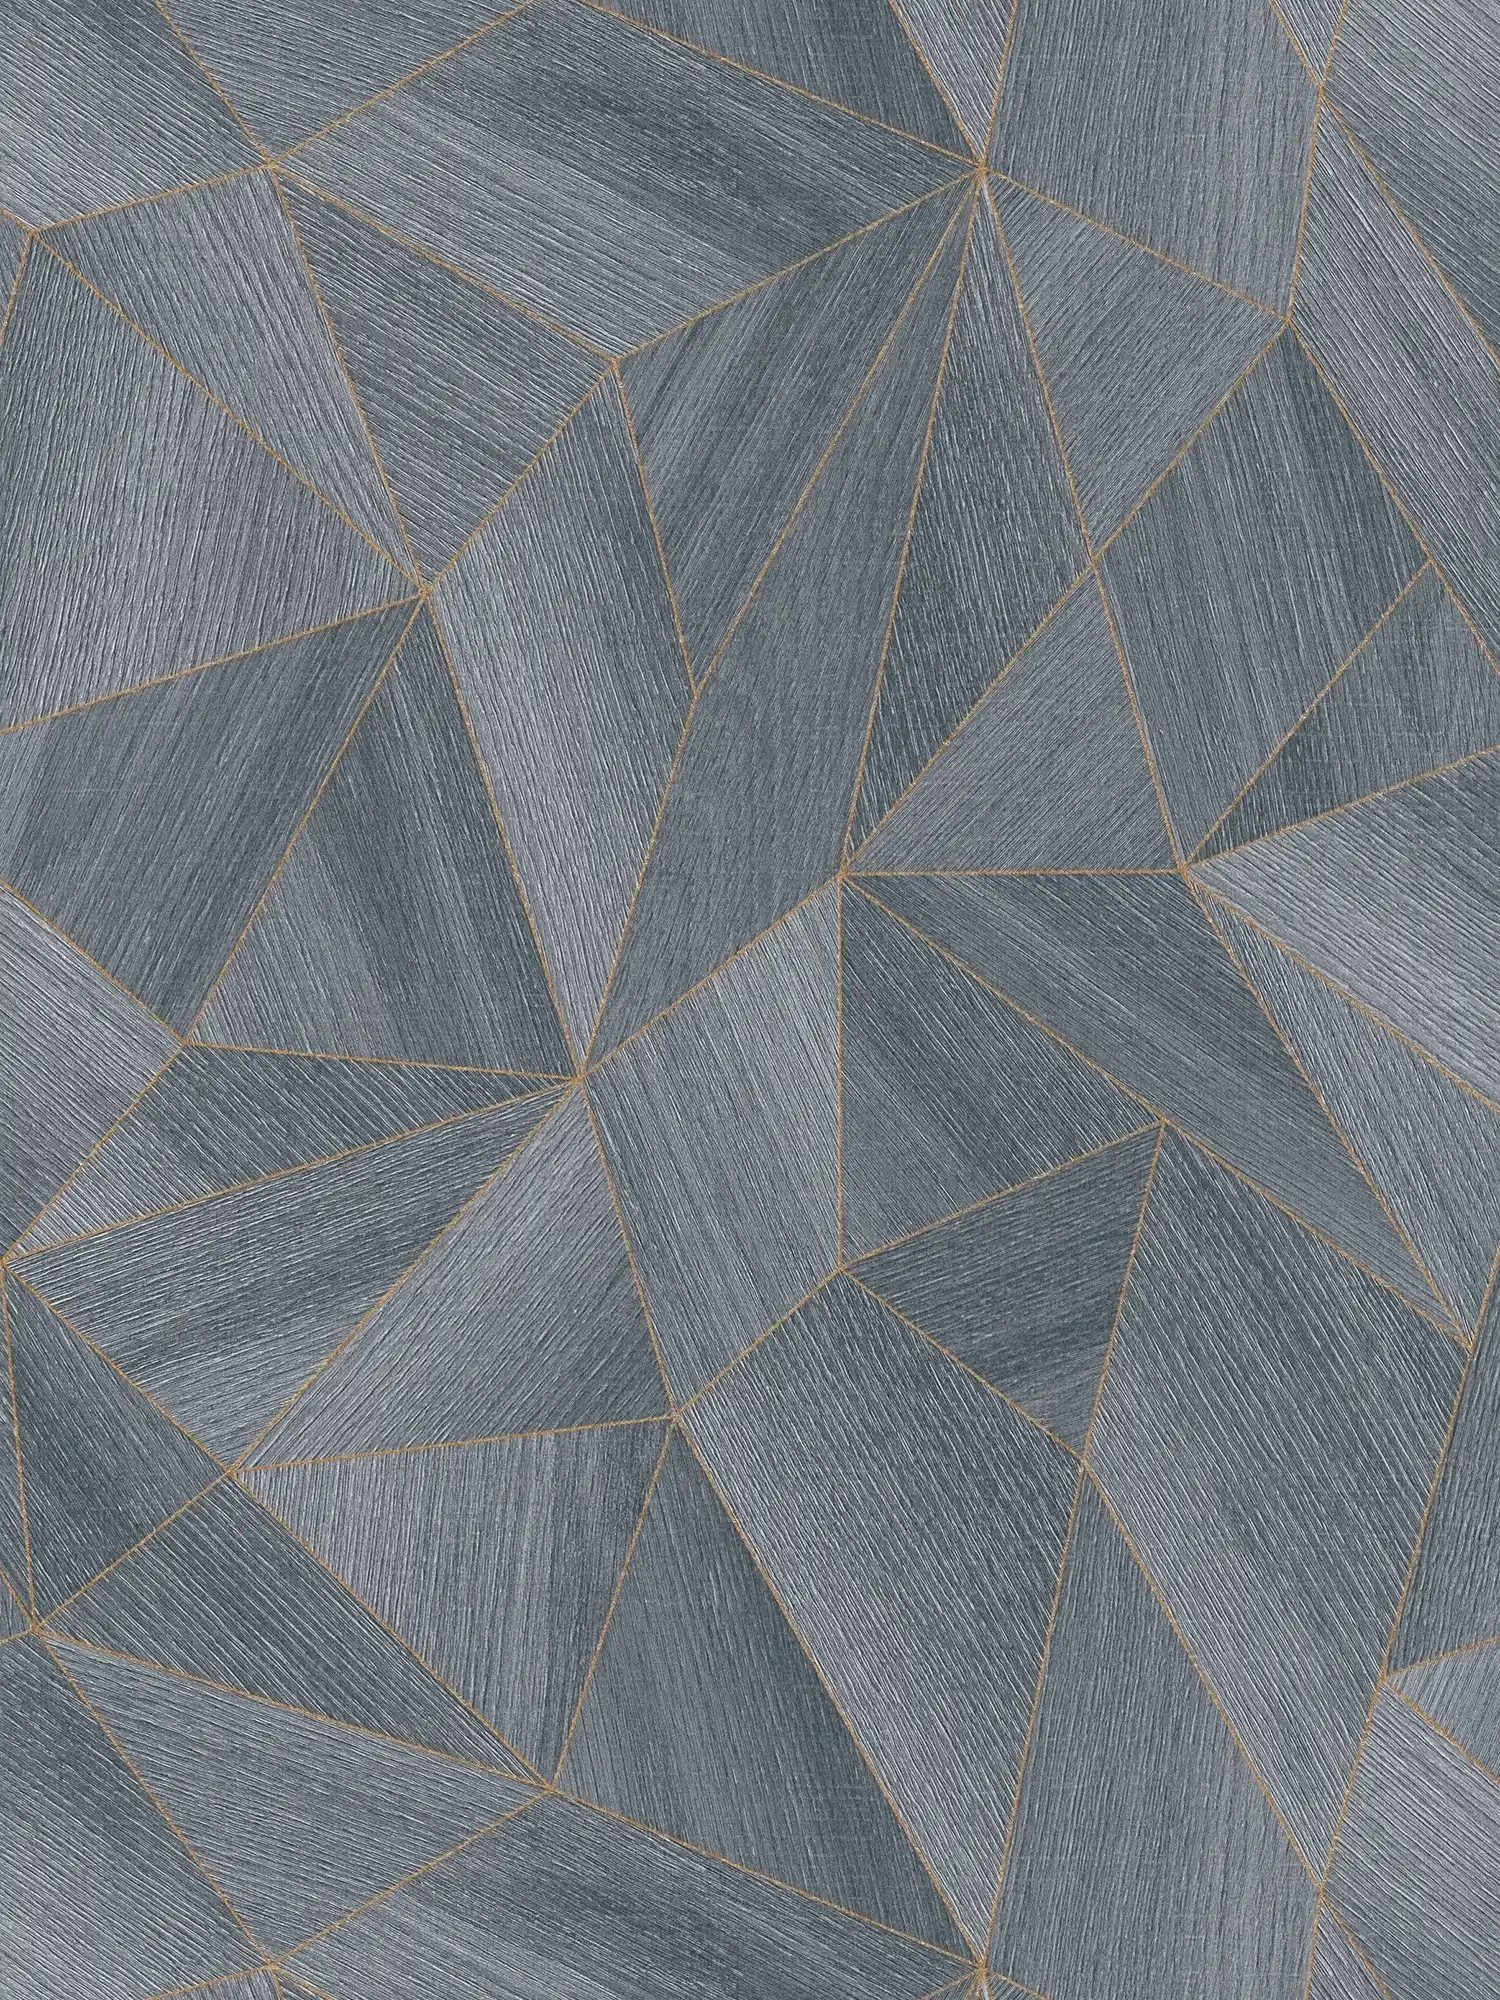         Holztapete geometrisches Muster & Metallic-Effekt – Grau, Schwarz
    